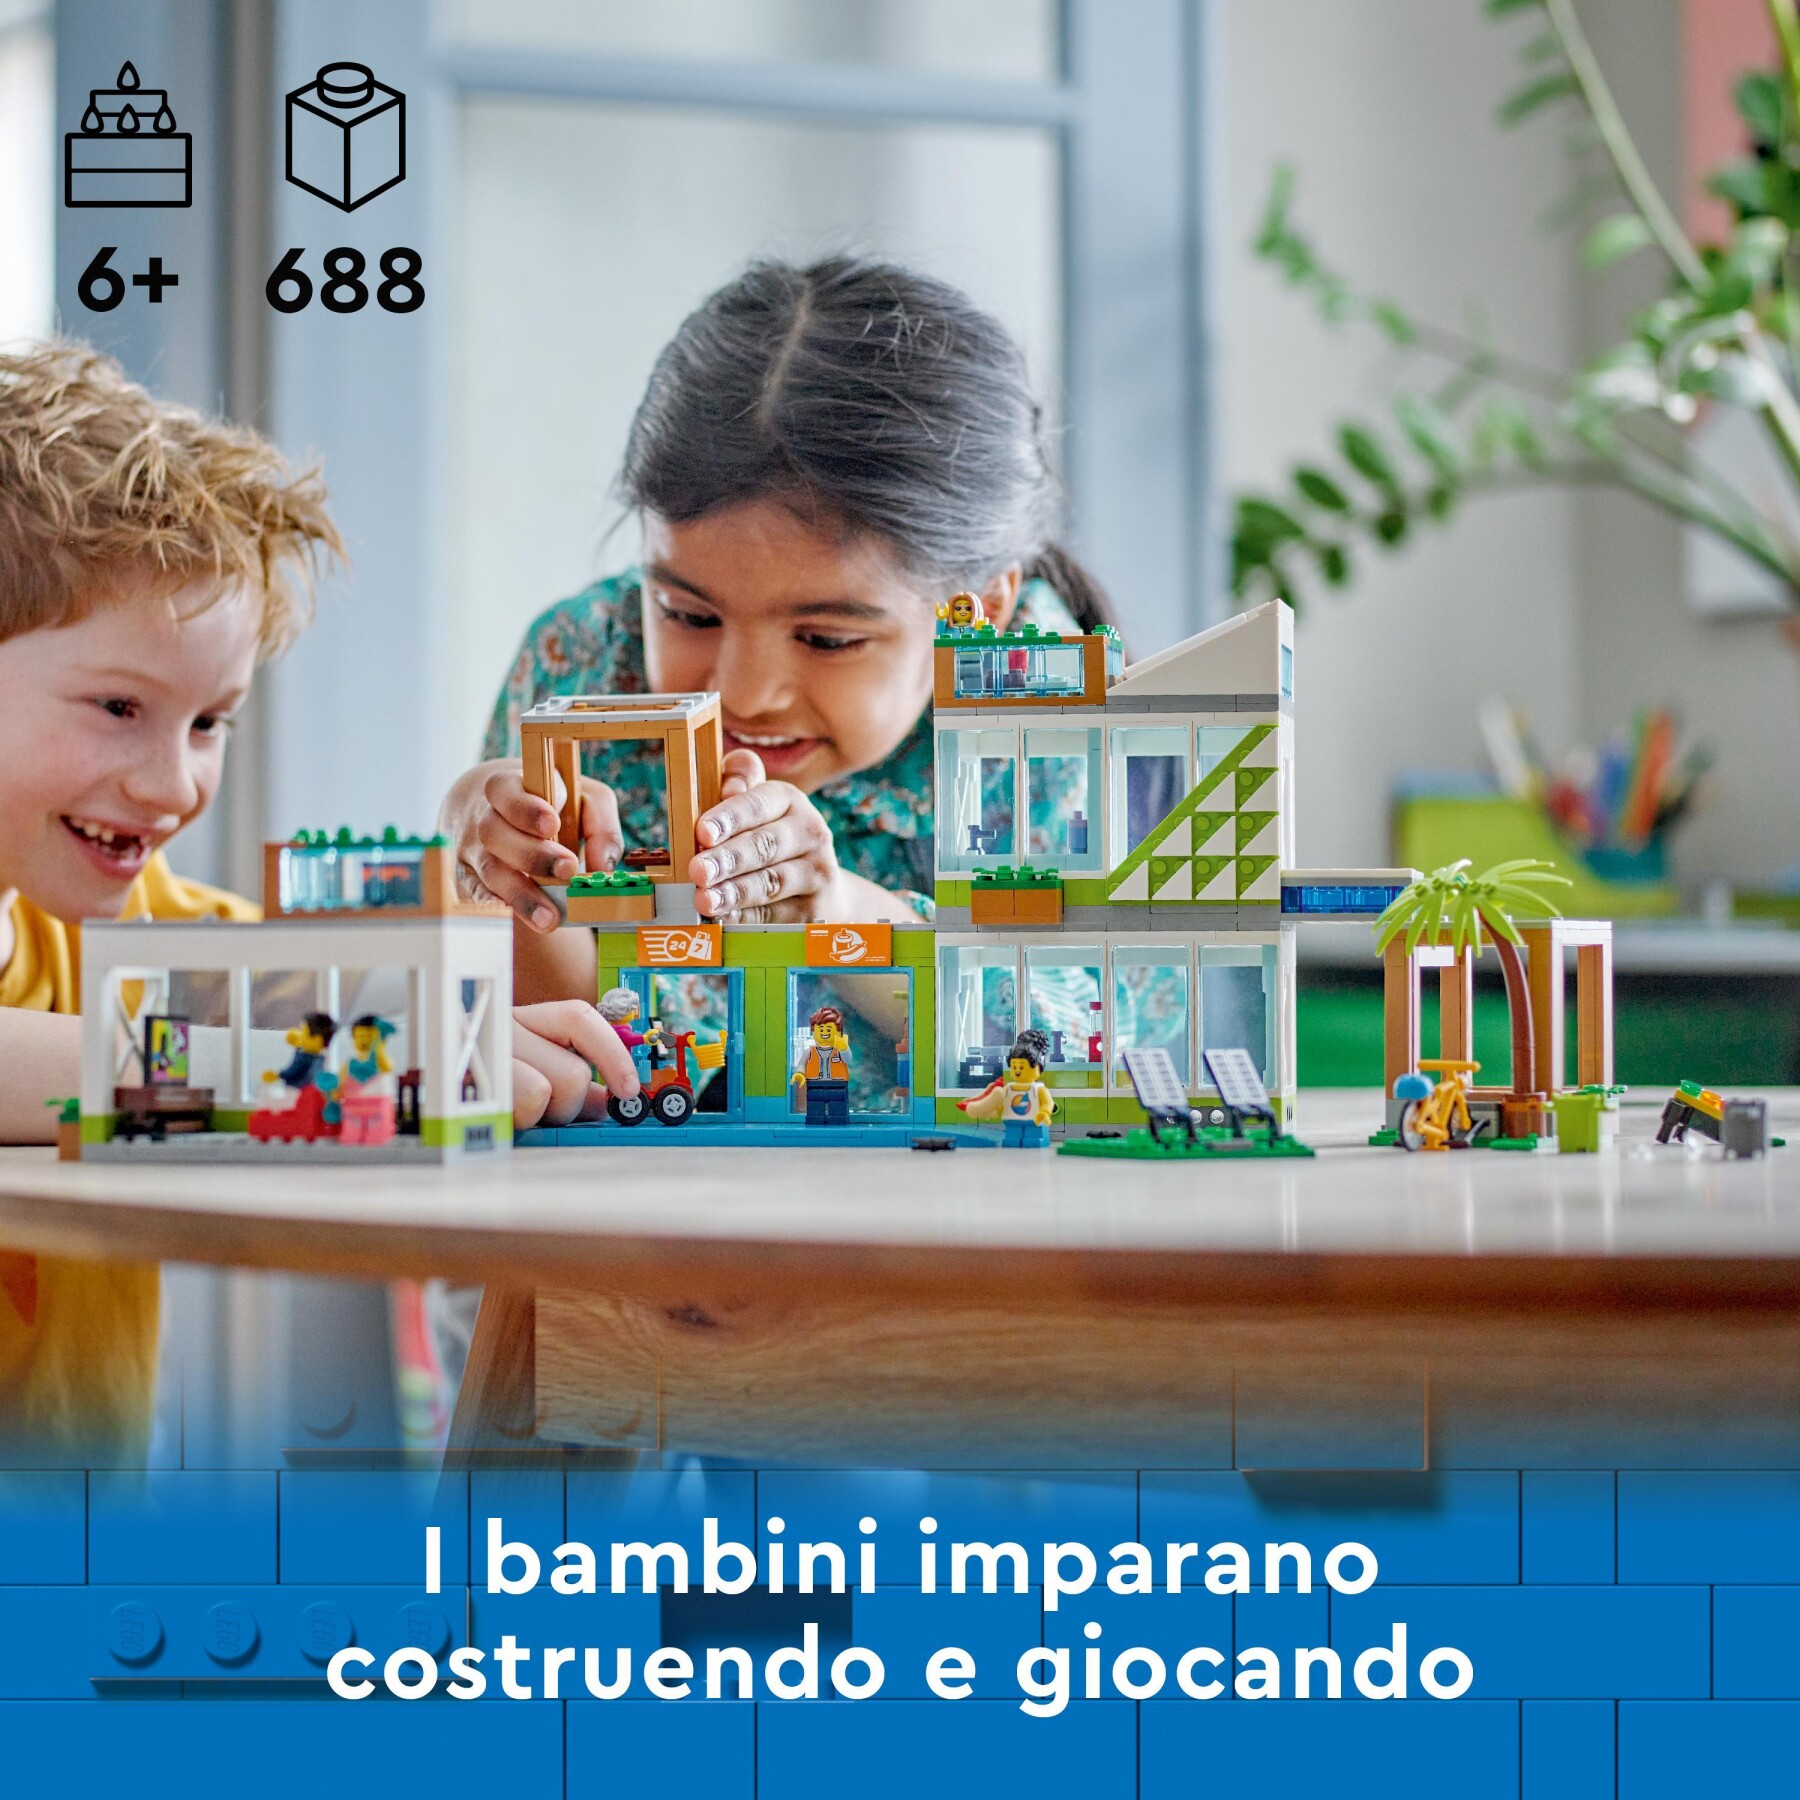 Lego city 60365 condomini, modular building set con stanze combinabili e 6 minifigure, regalo di compleanno per bambini 6+ anni - LEGO CITY